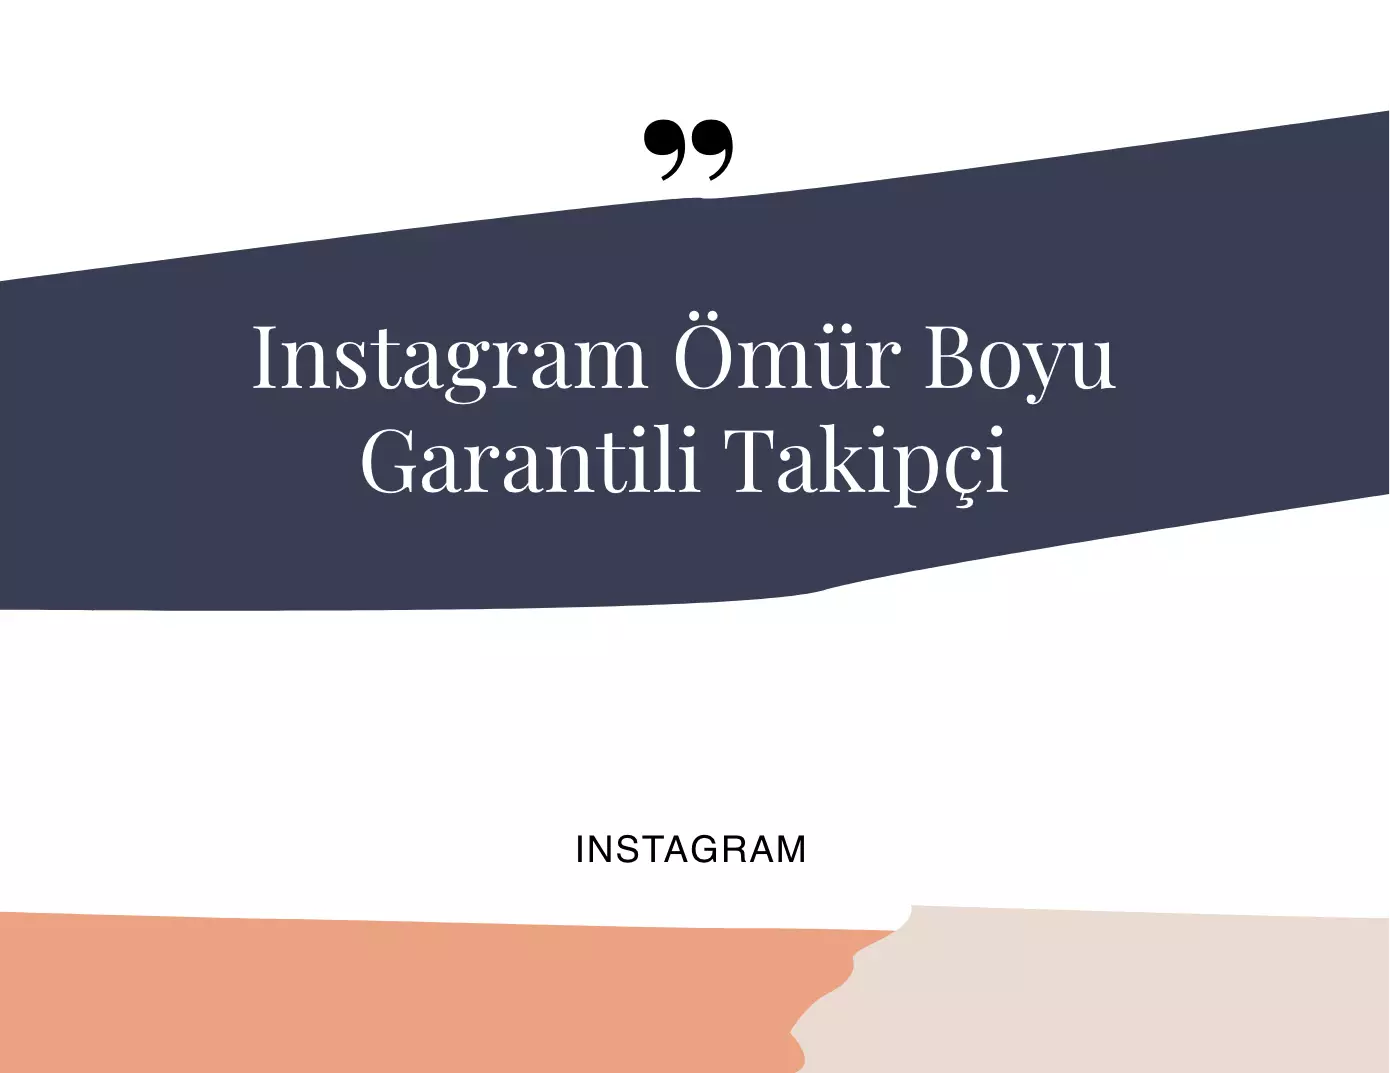 Instagram Ömür Boyu Garantili Takipçi